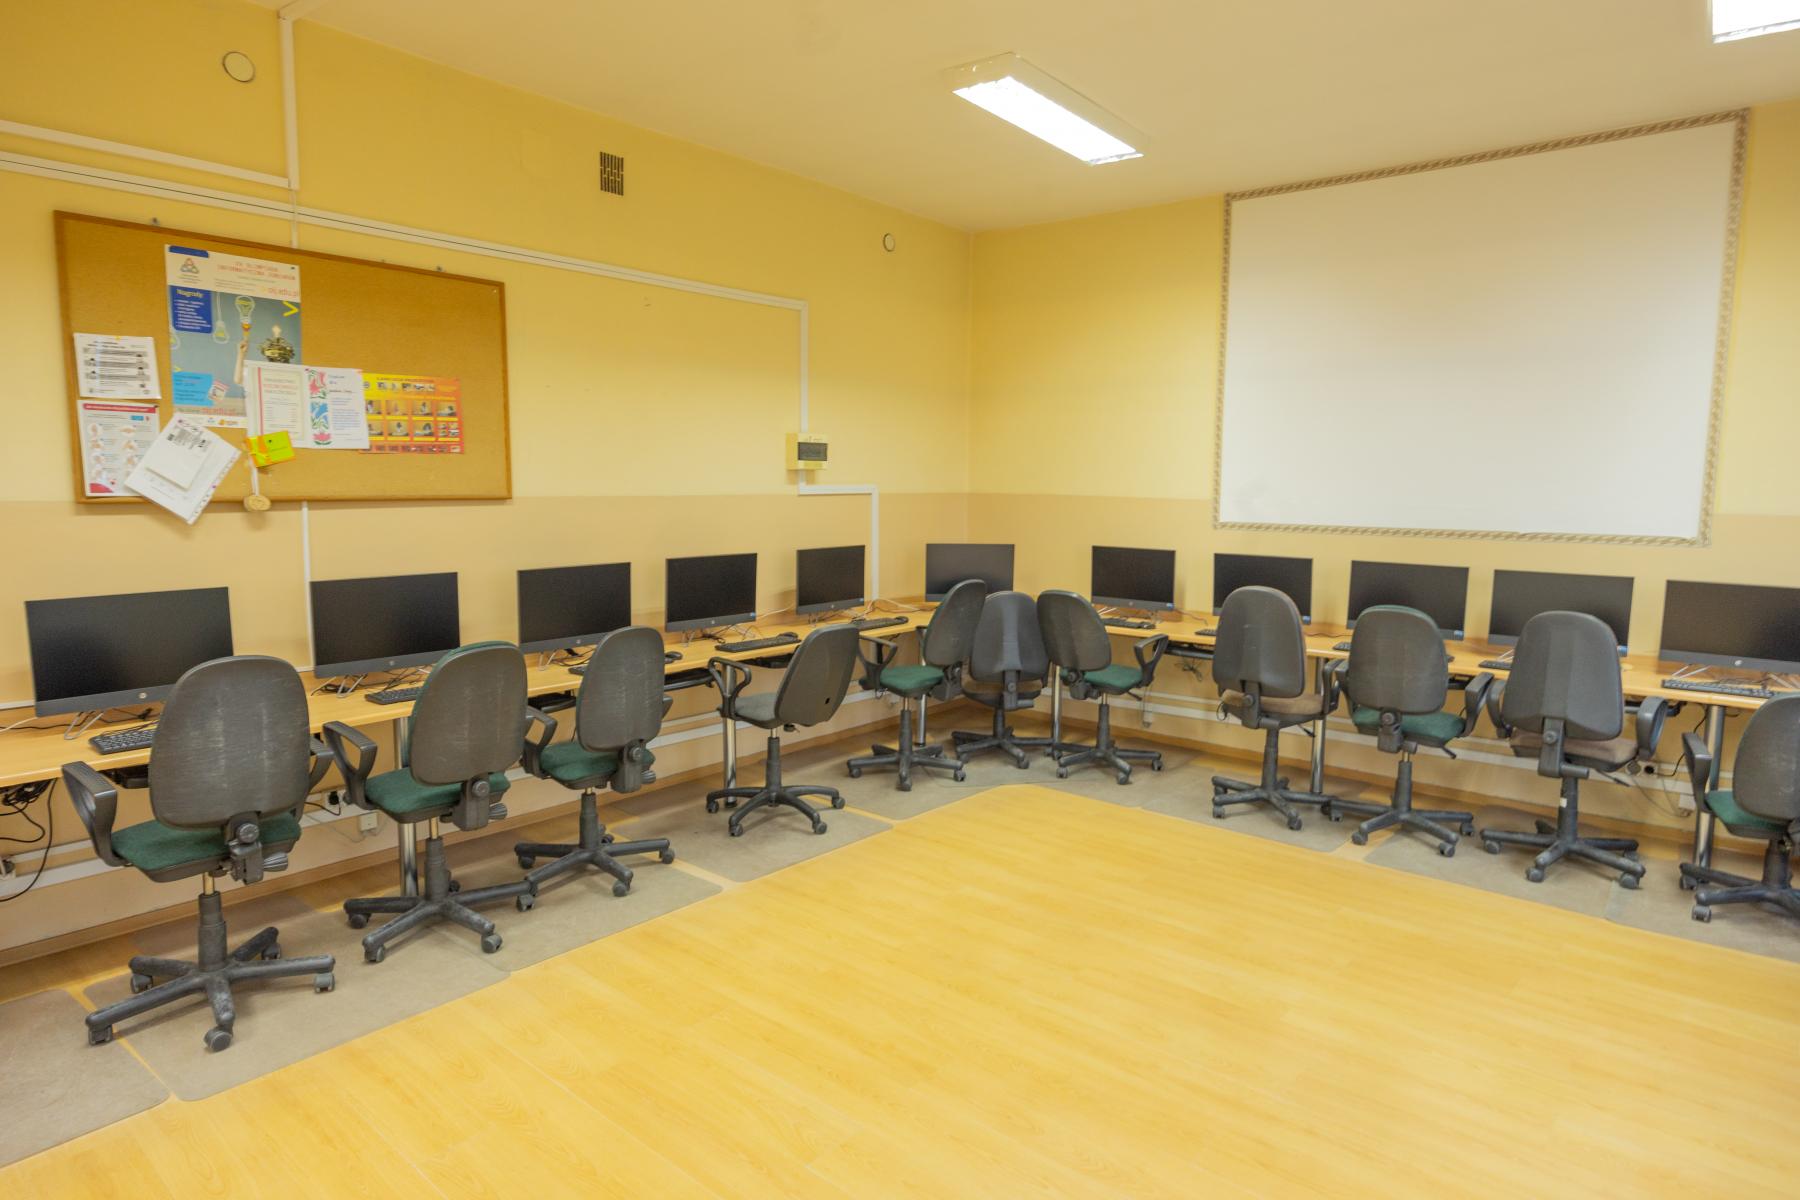 Pracownia komputerowa w szkole. sala pomalowana na żółto, do okoła przy ścianach ławki, krzesła i monitory